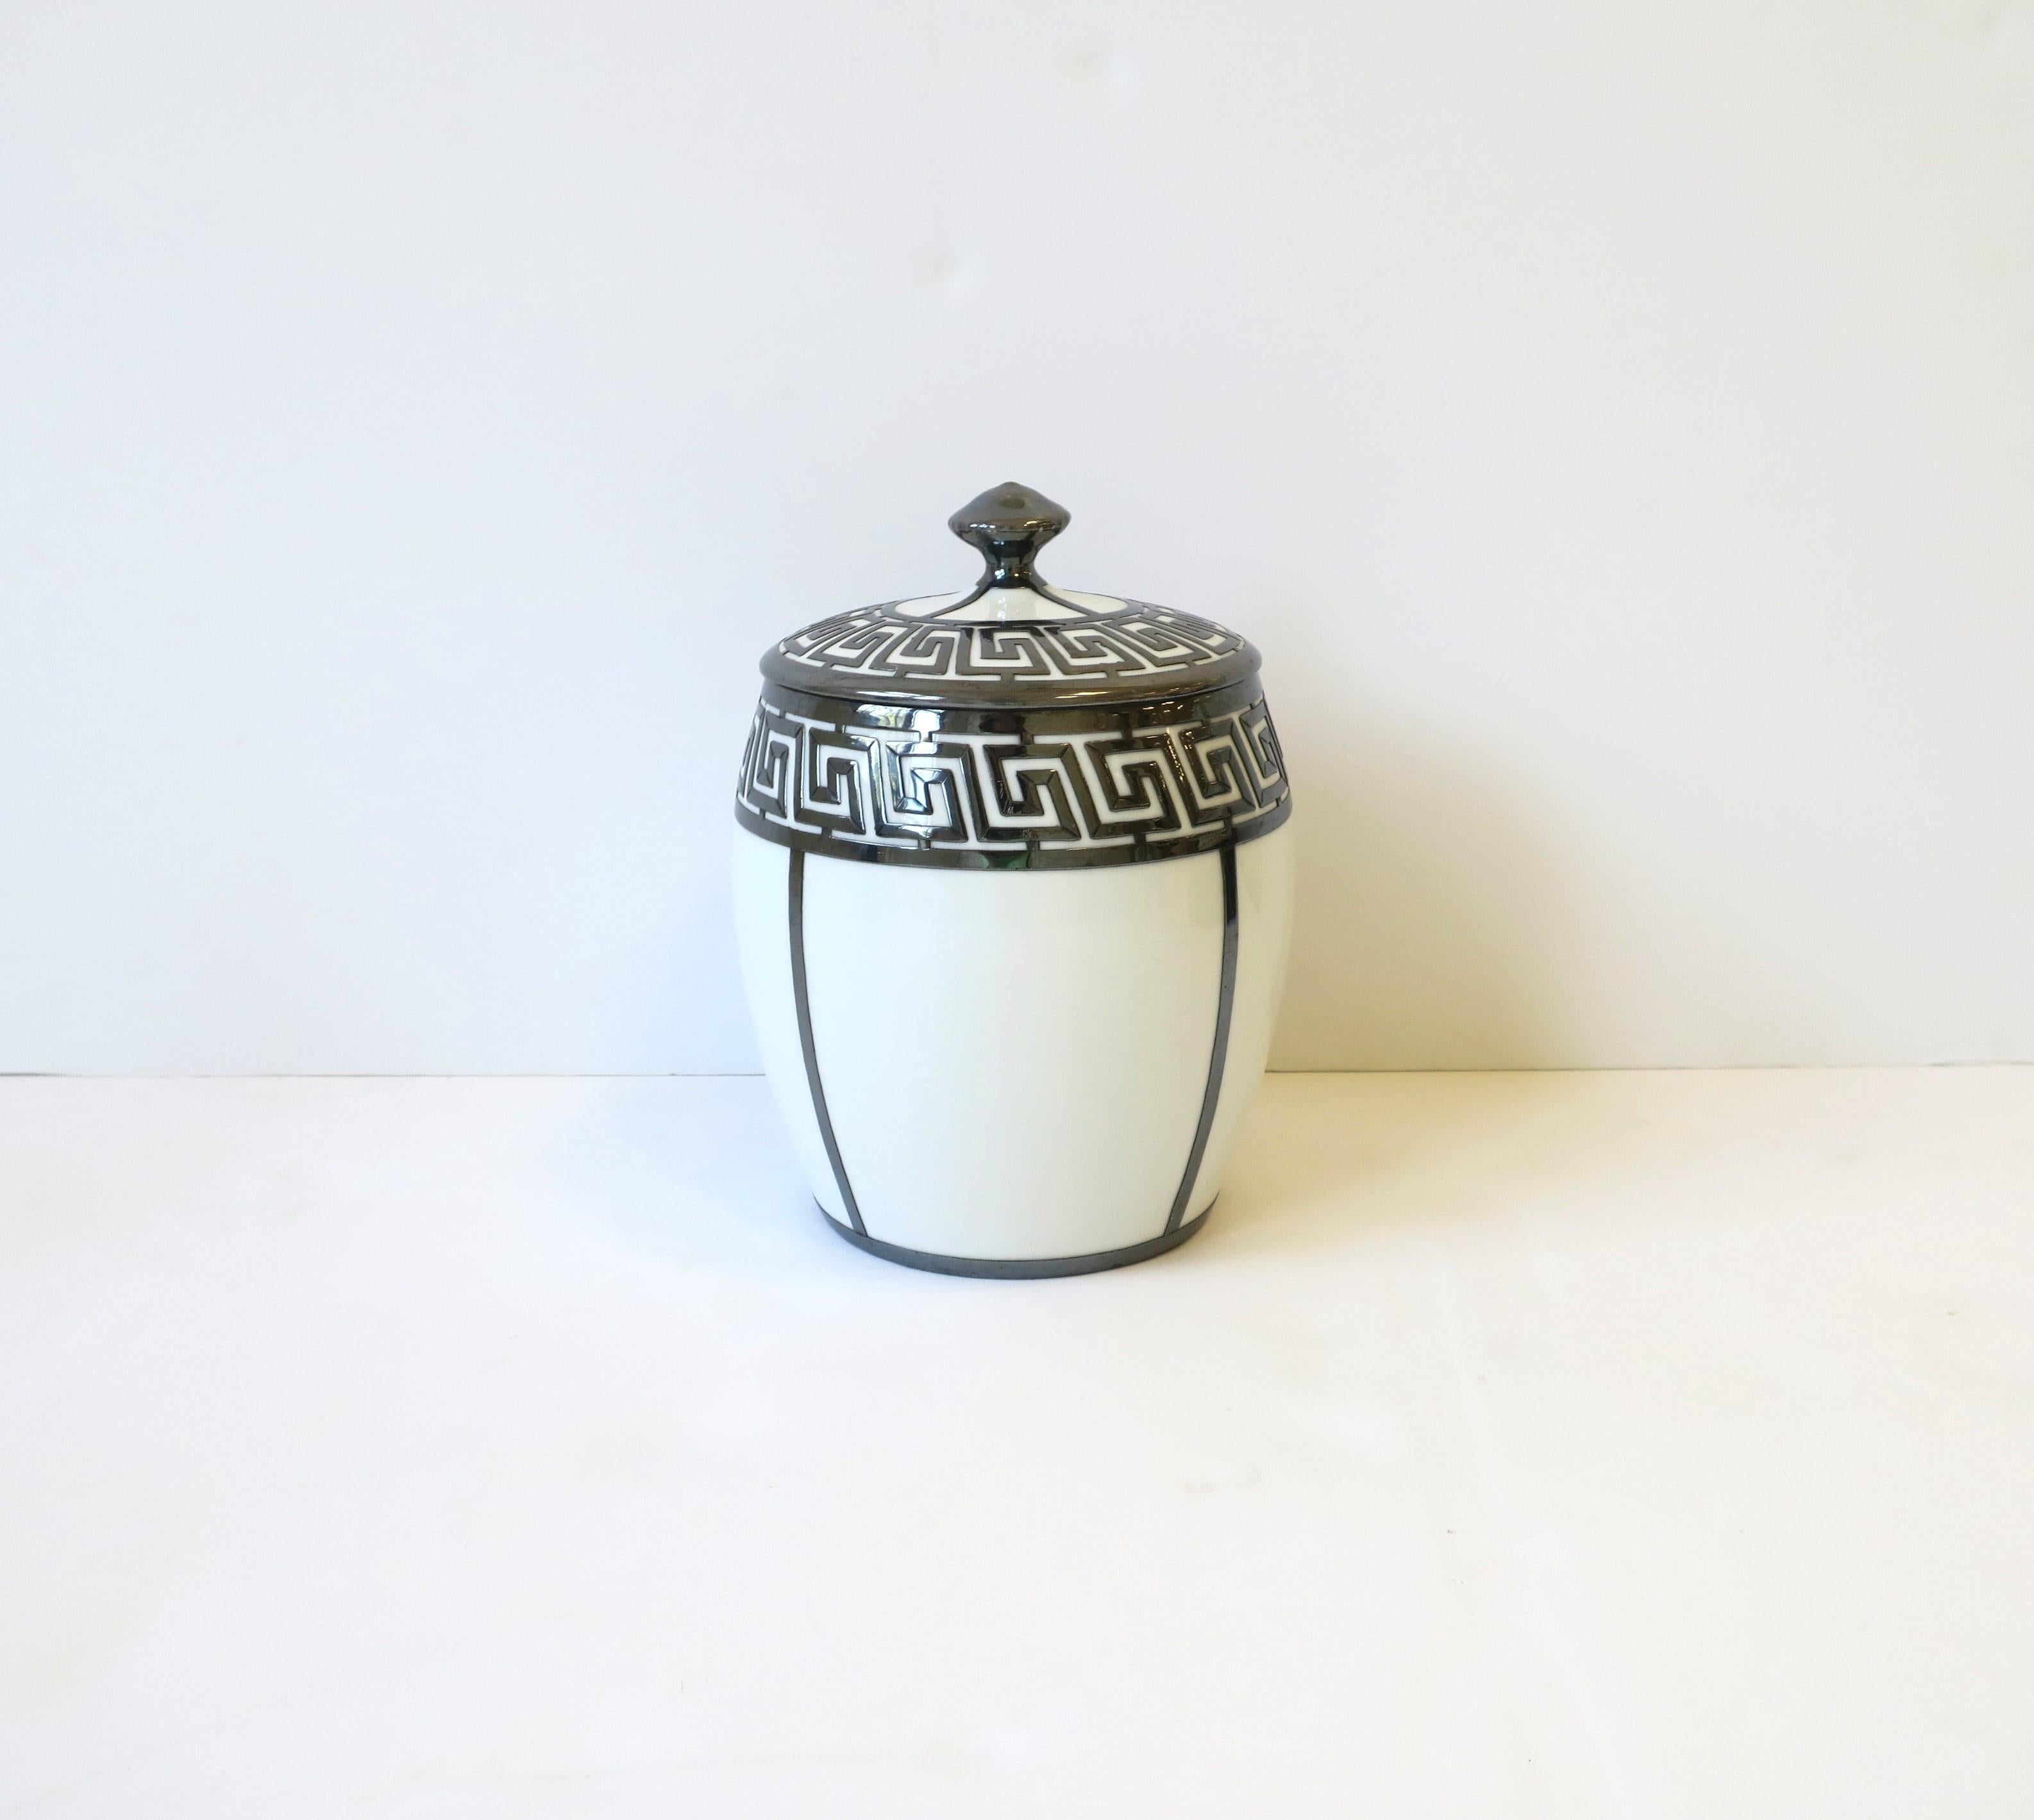 Glazed French Ice Bucket with Greek-Key Design